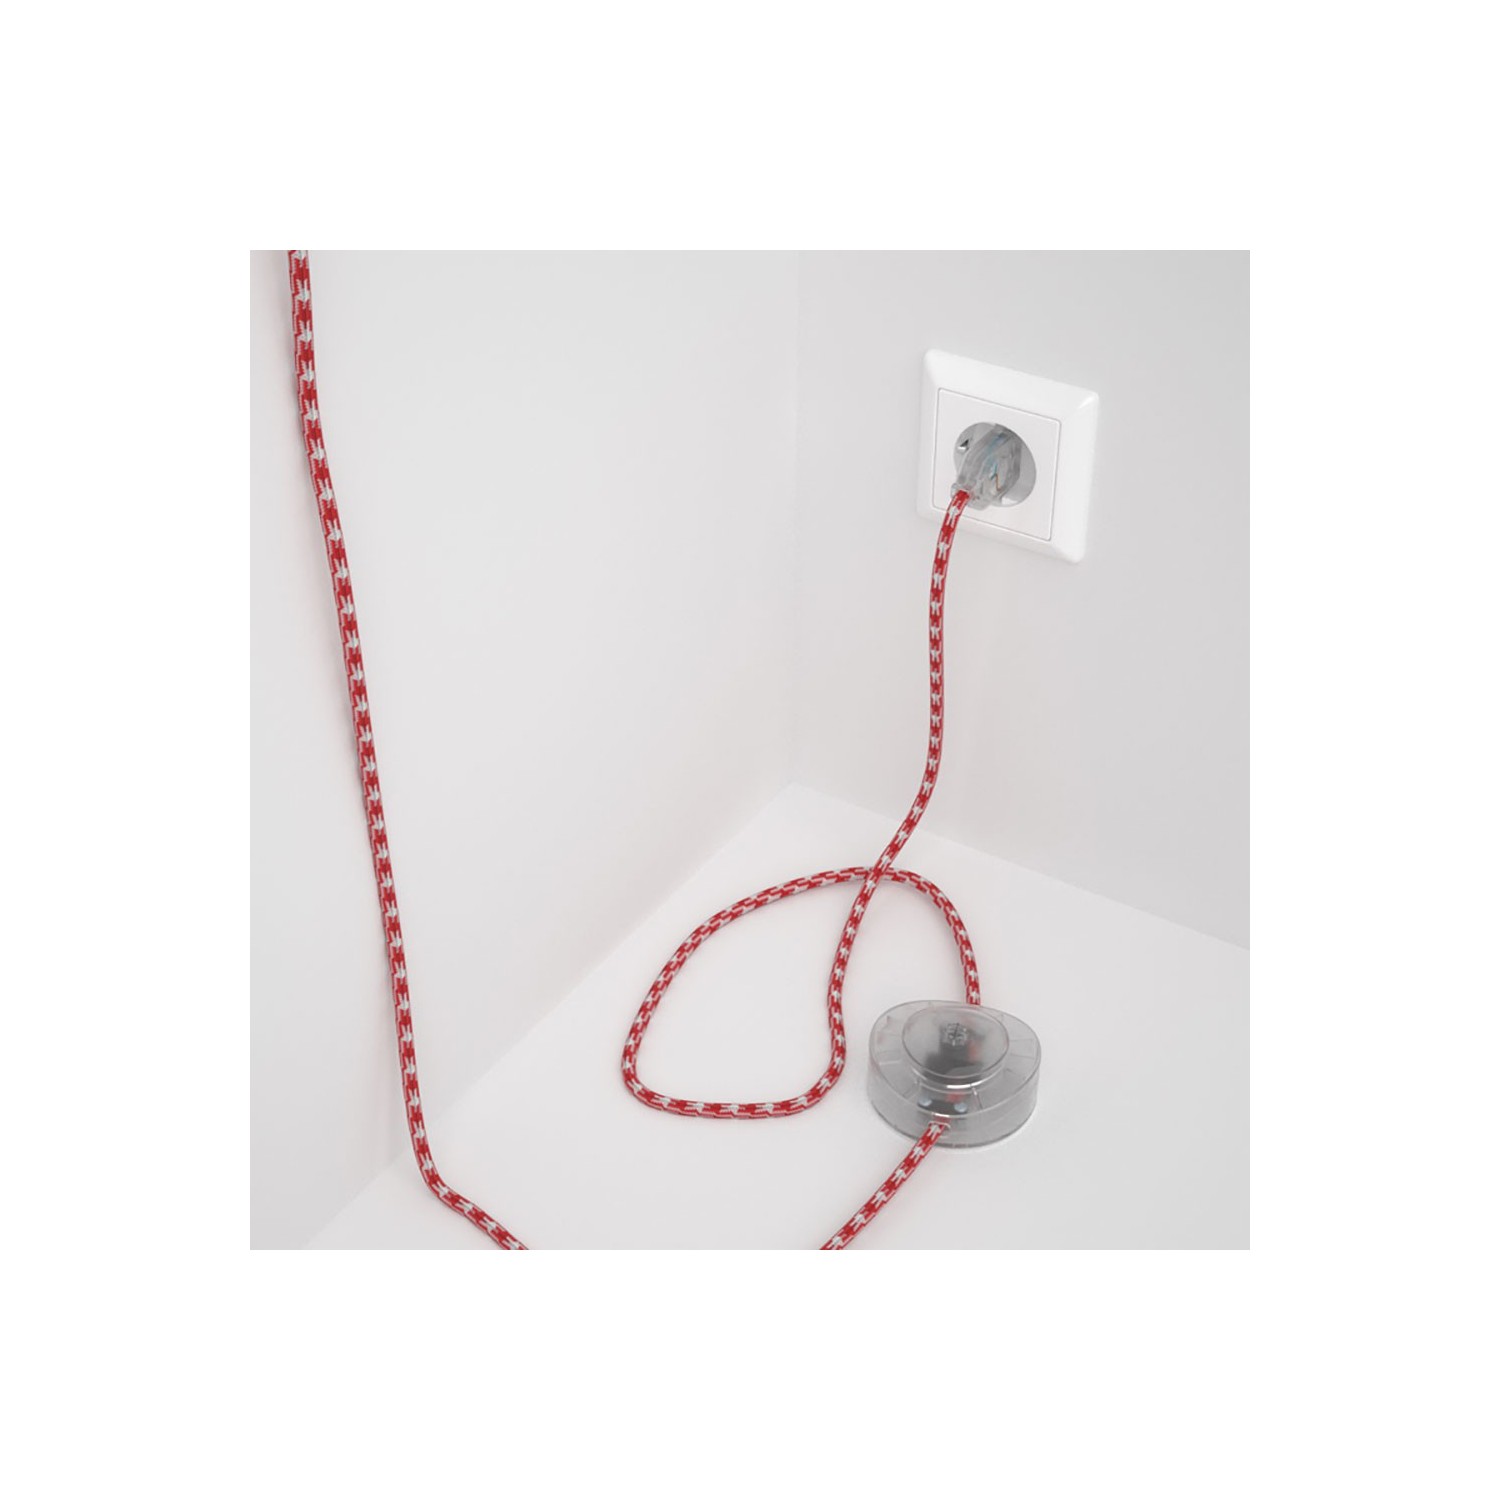 Strijkijzersnoer set RP09 rood - wit tweekleurig viscose 3 m. voor staande lamp met stekker en voetschakelaar.